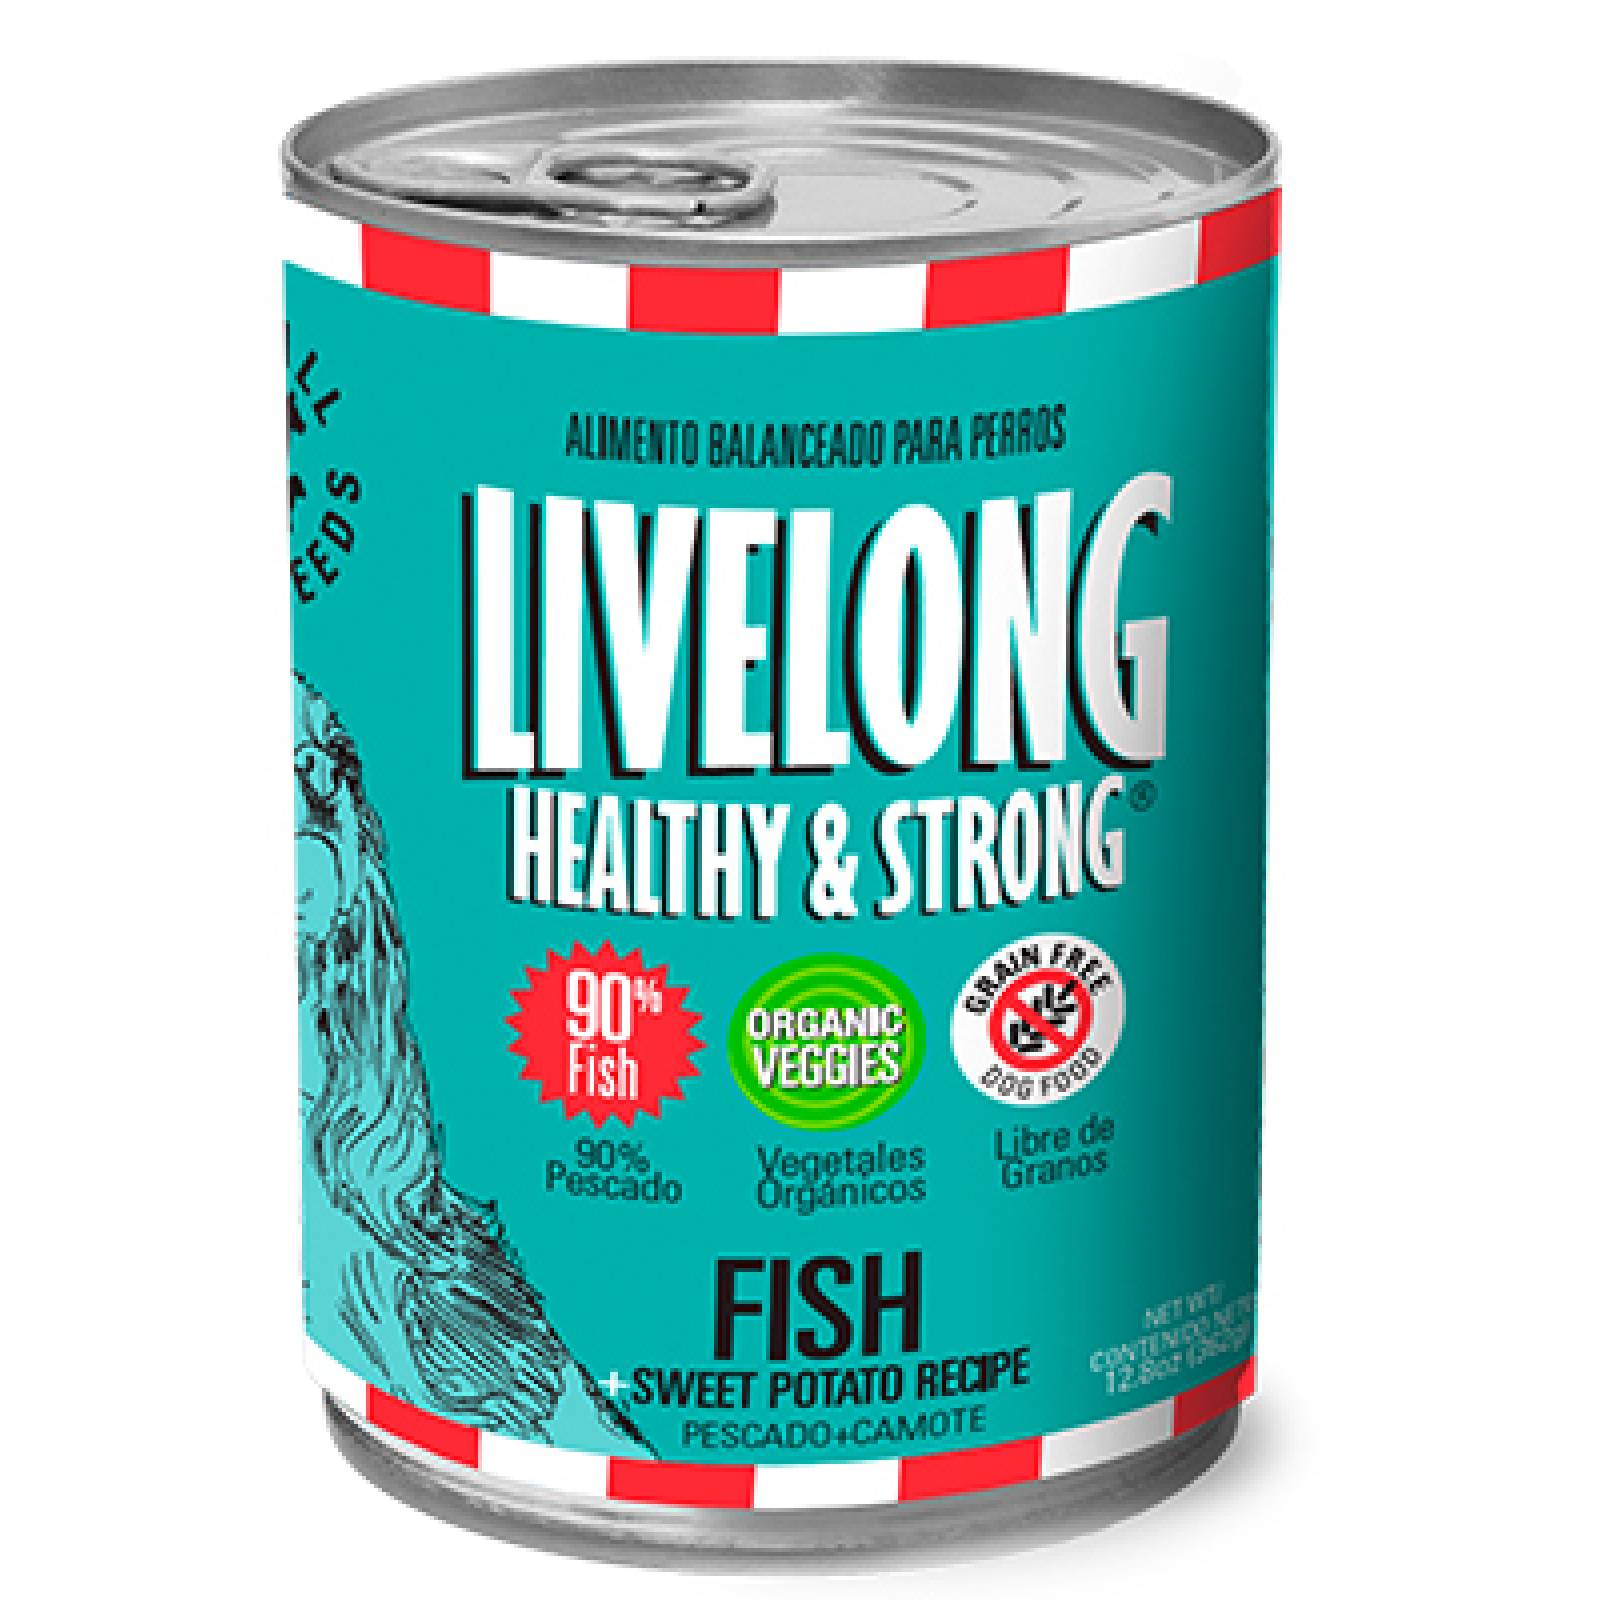 LiveLong Healthy & Strong Alimento para Perro Humedo Pescado 368 gr